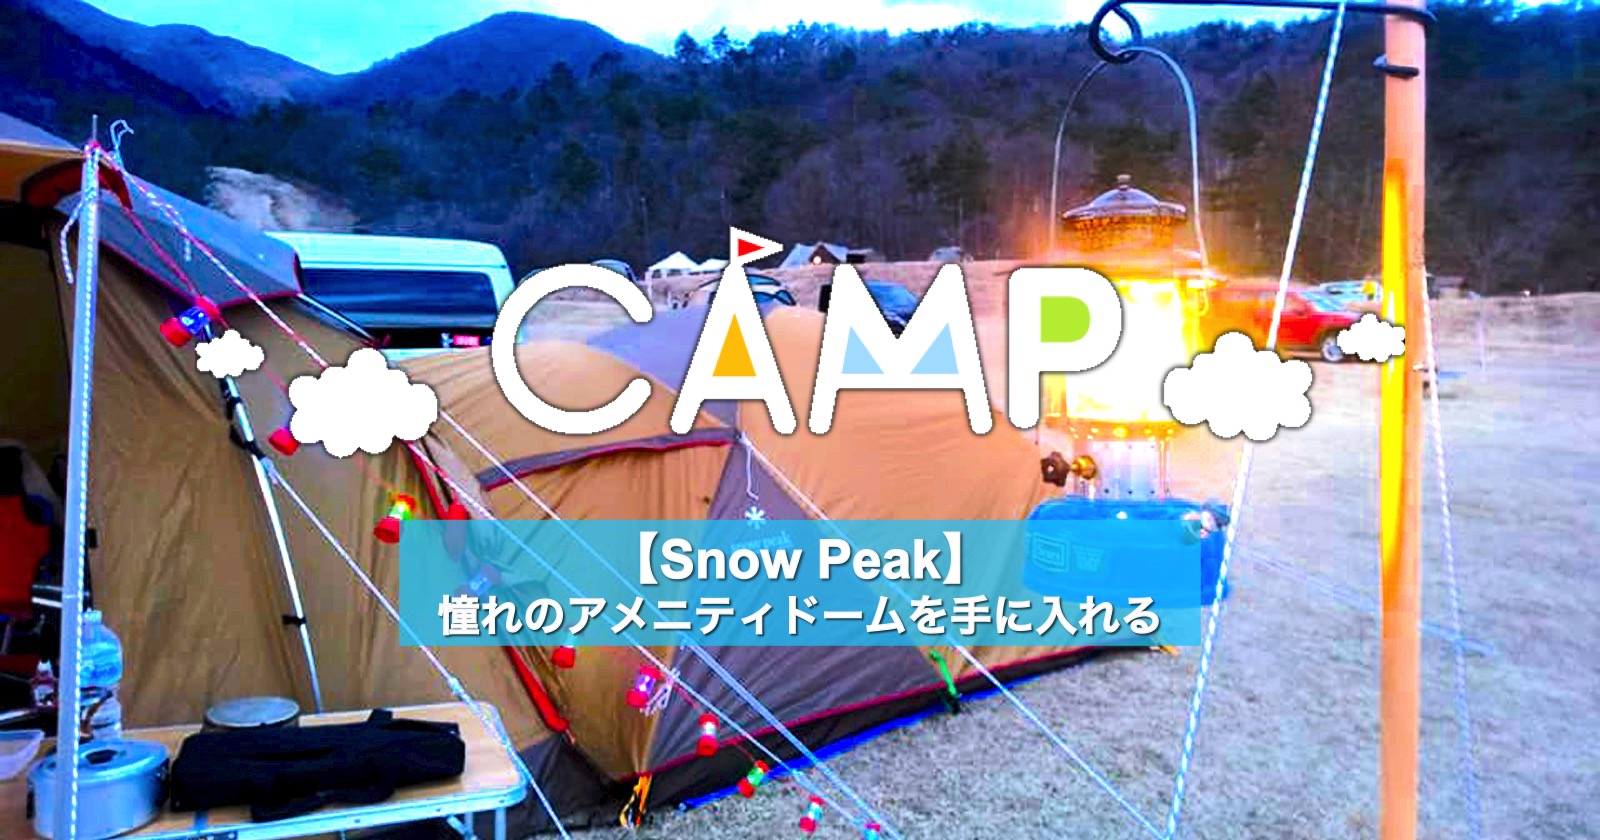 Snow Peak】憧れのアメニティドームを手に入れる | キャンプ 